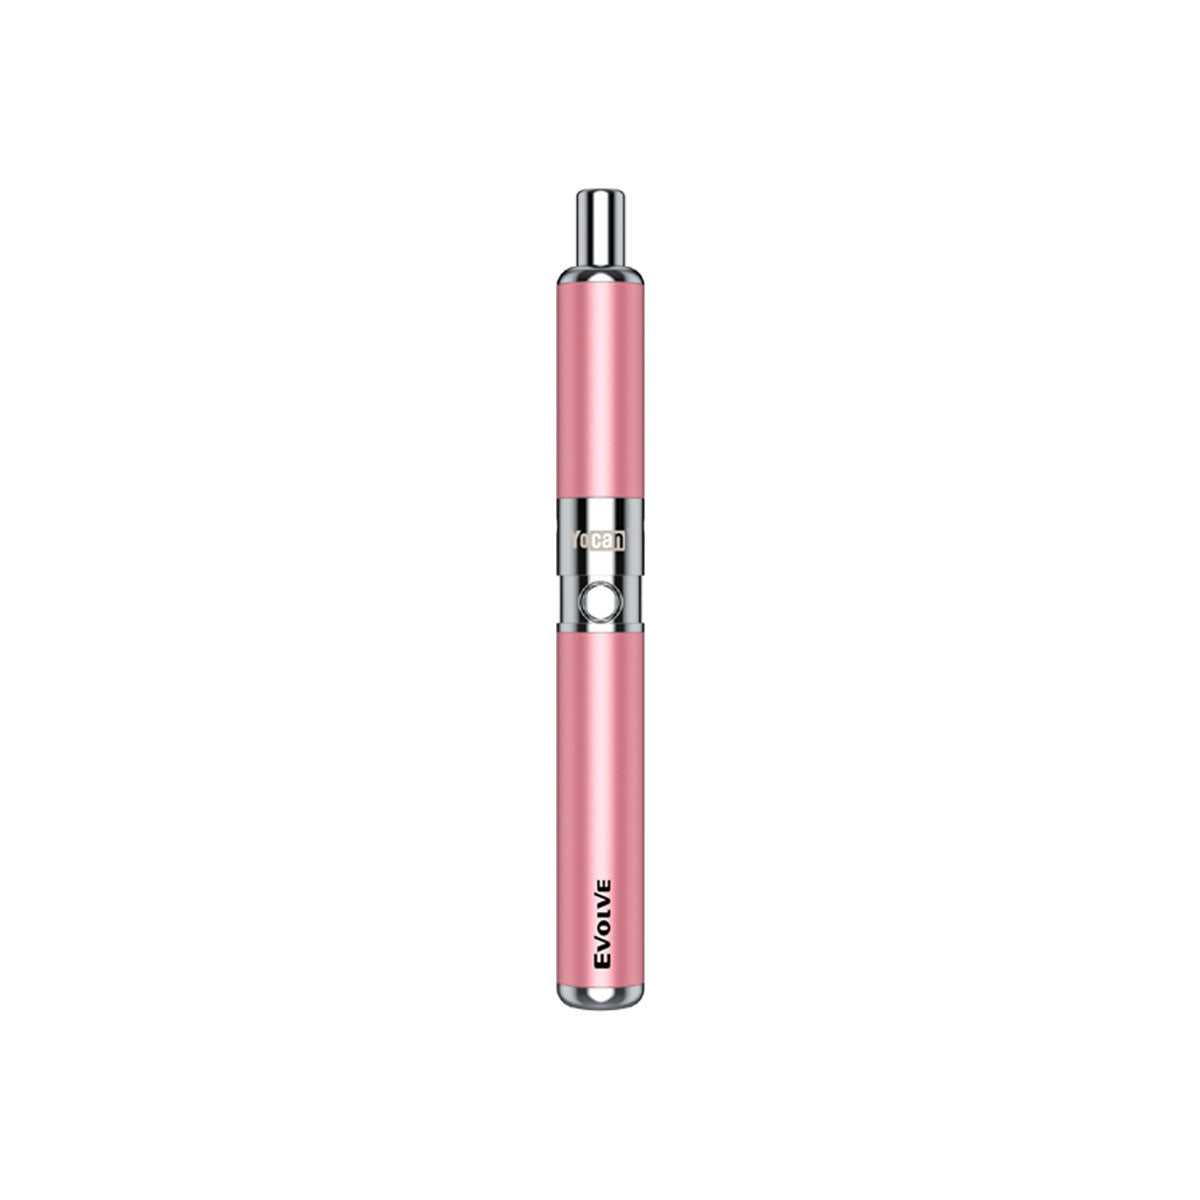 Yocan Evolve Dry Herb Vaporizer Kit - Sakura Pink